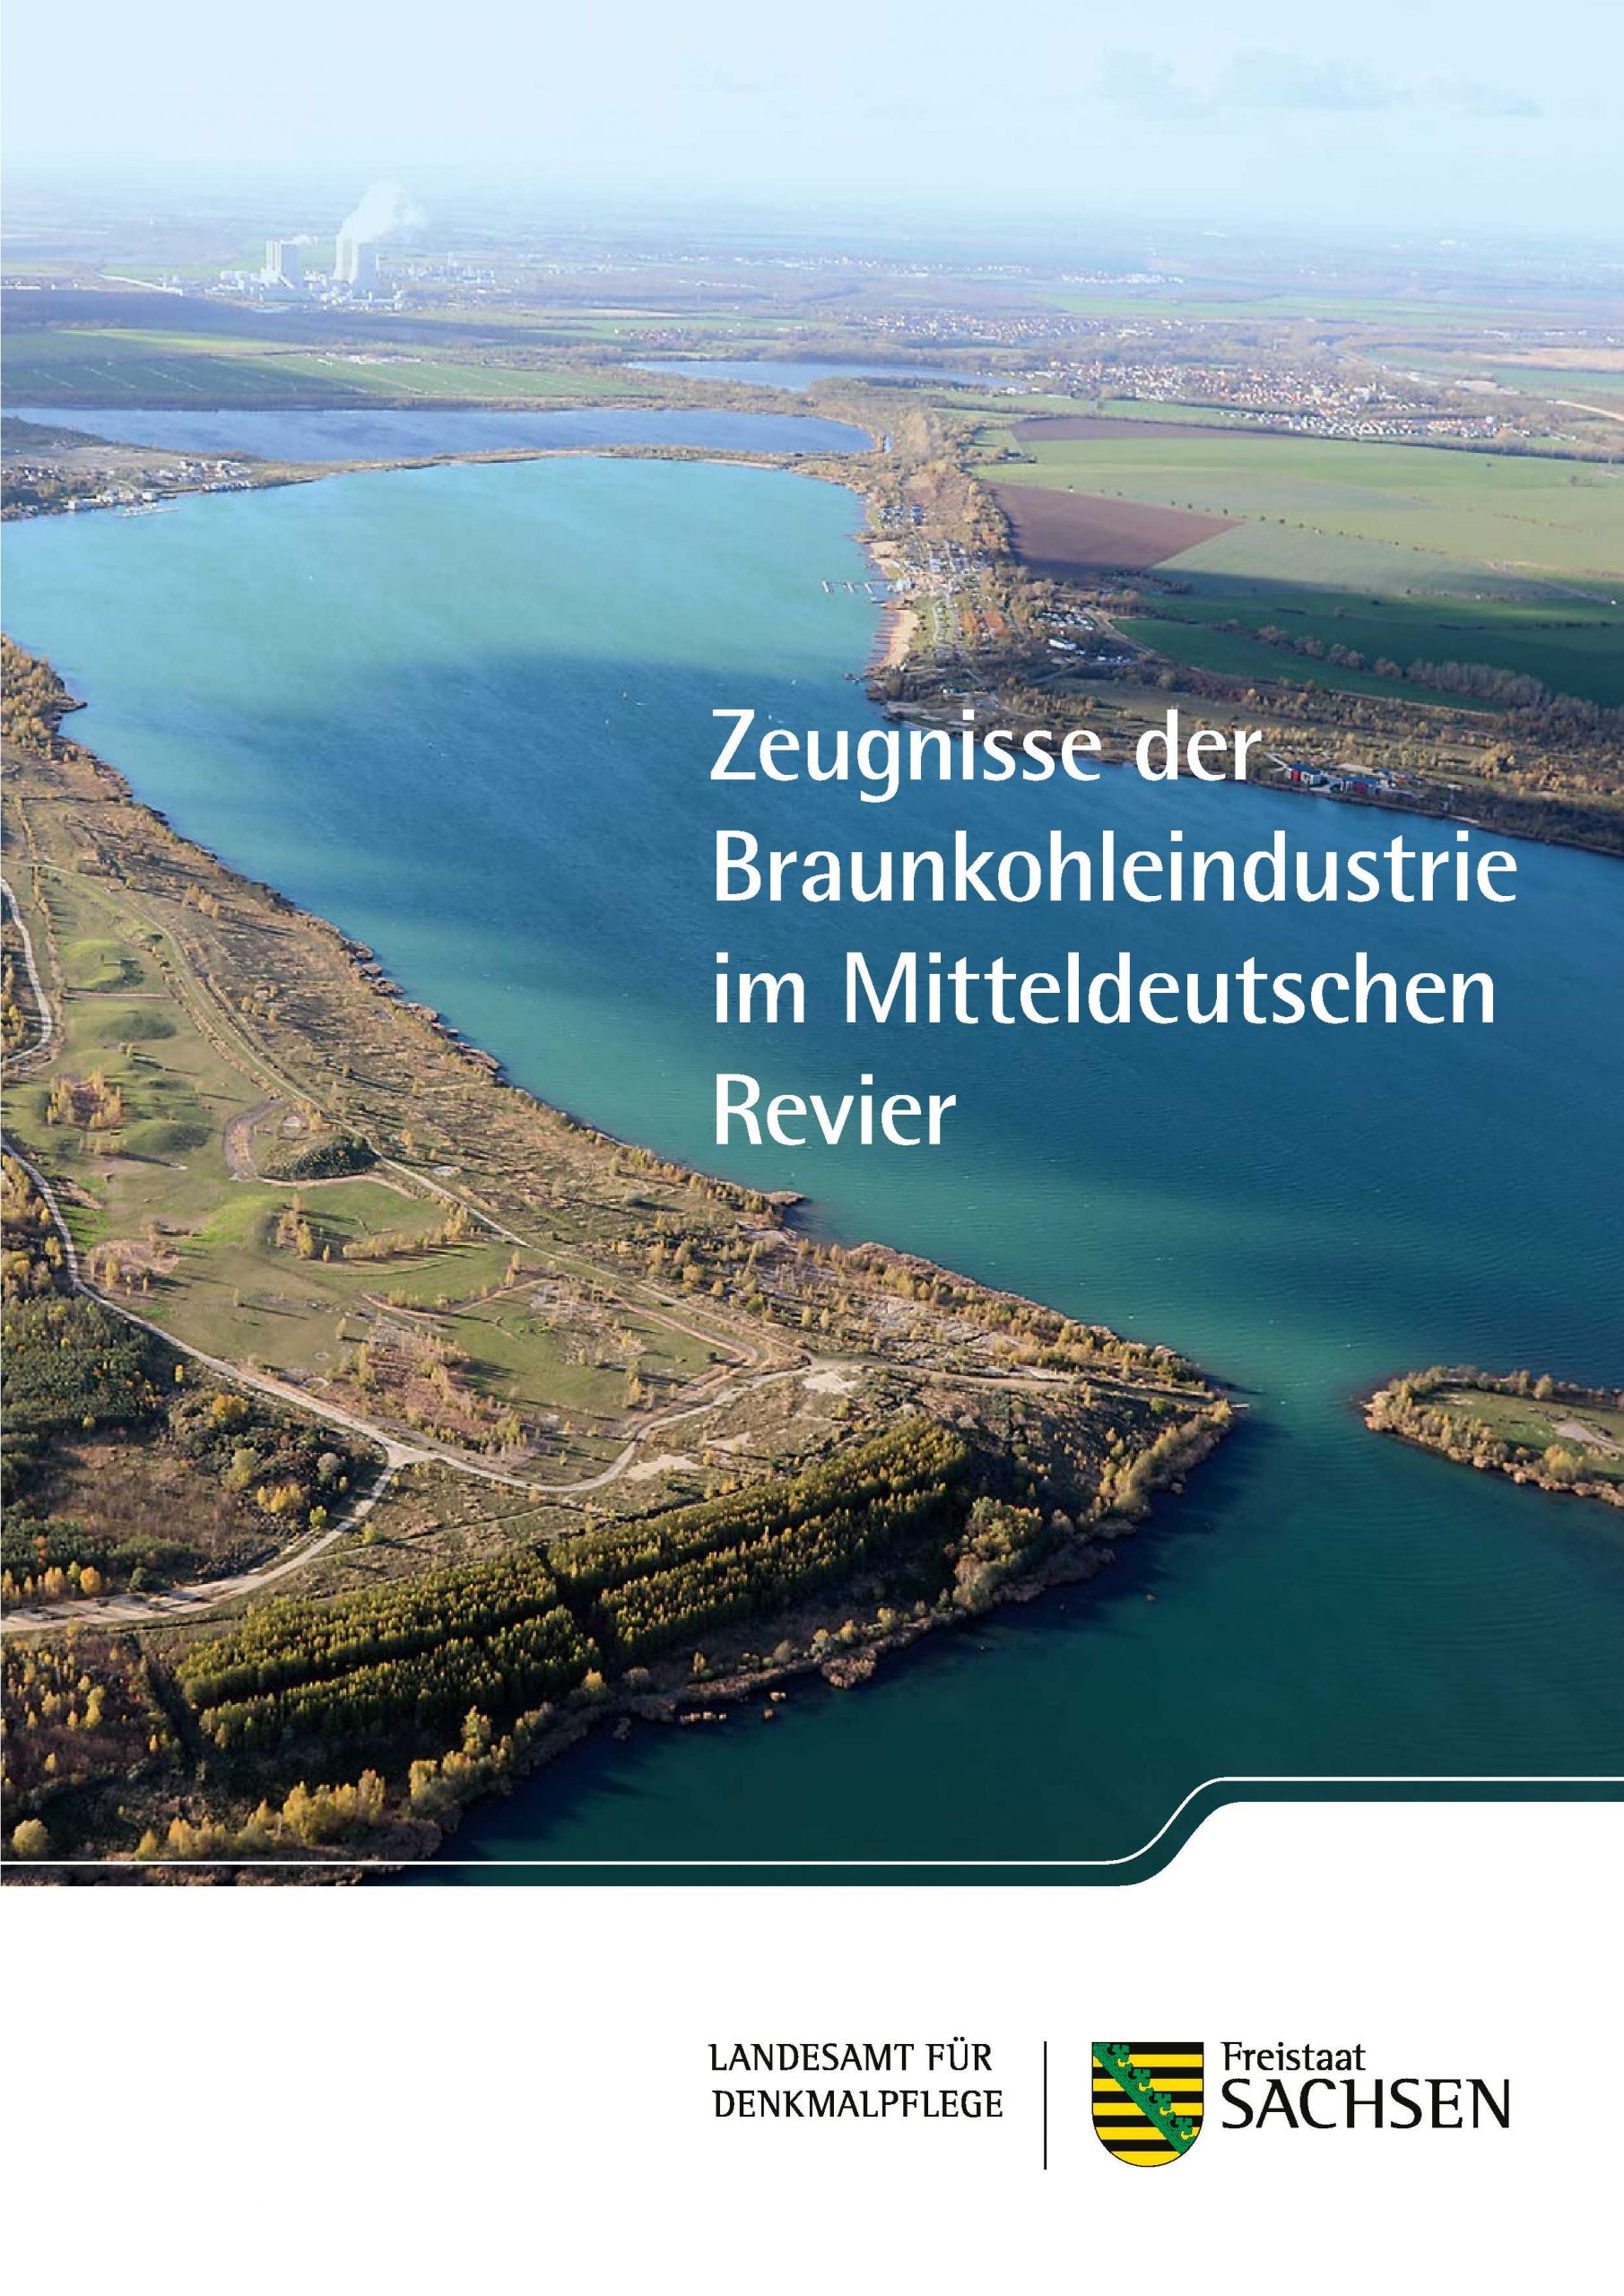 Zeugnisse der Braunkohleindustrie in Sachsen – zwei neue Broschüren erschienen